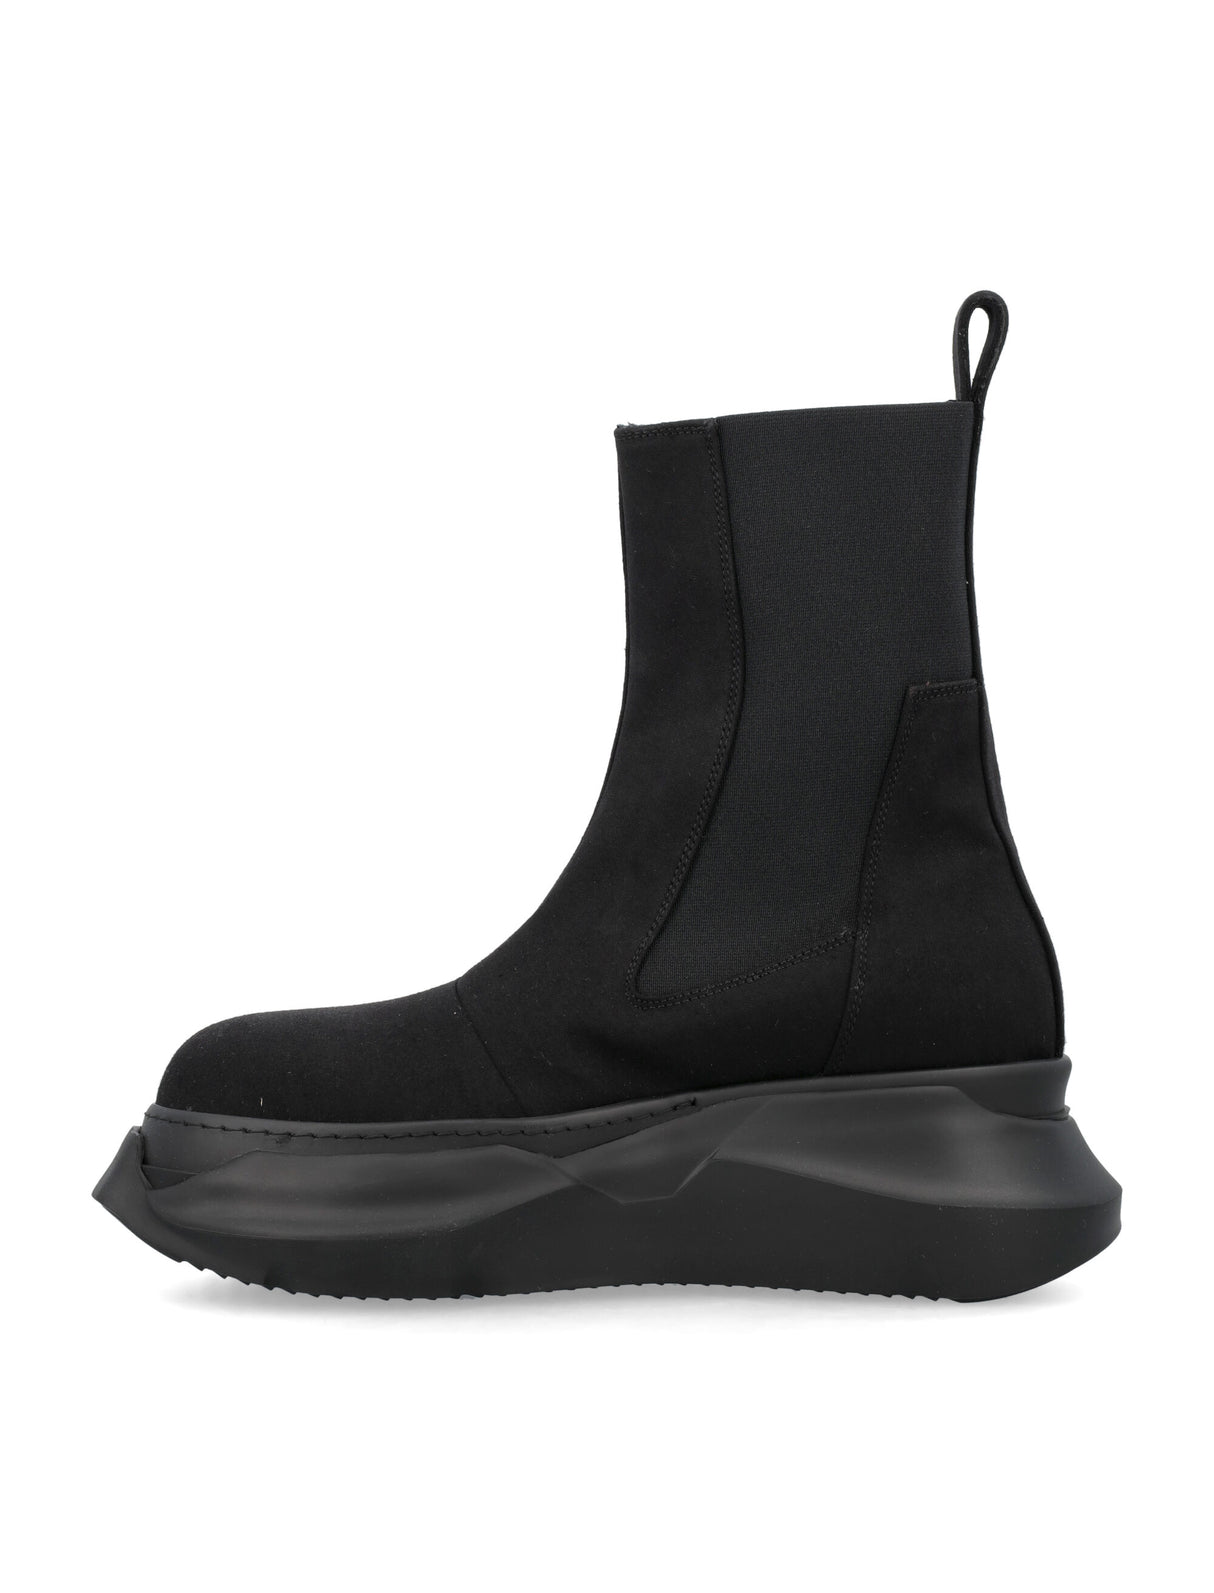 Giày boots cổ ngắn phong cách tối giản màu đen